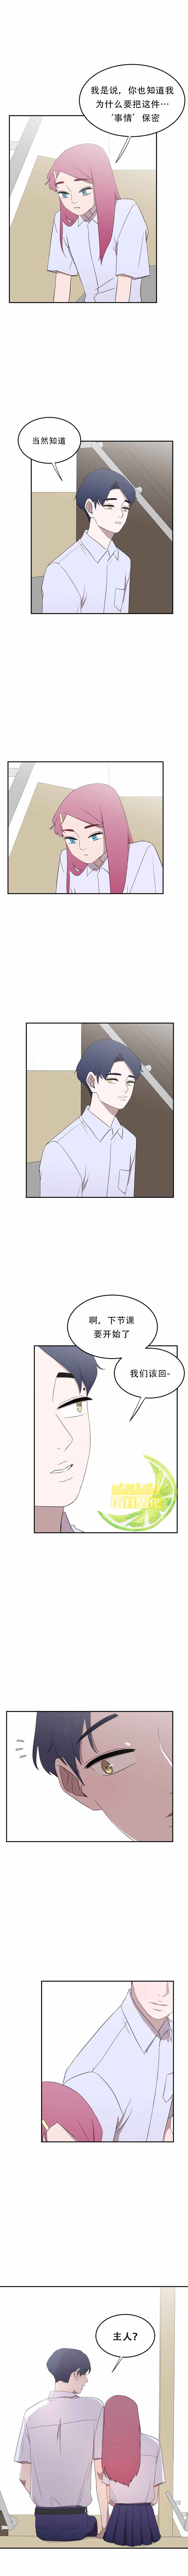 昼夜中文版漫画,第9话4图